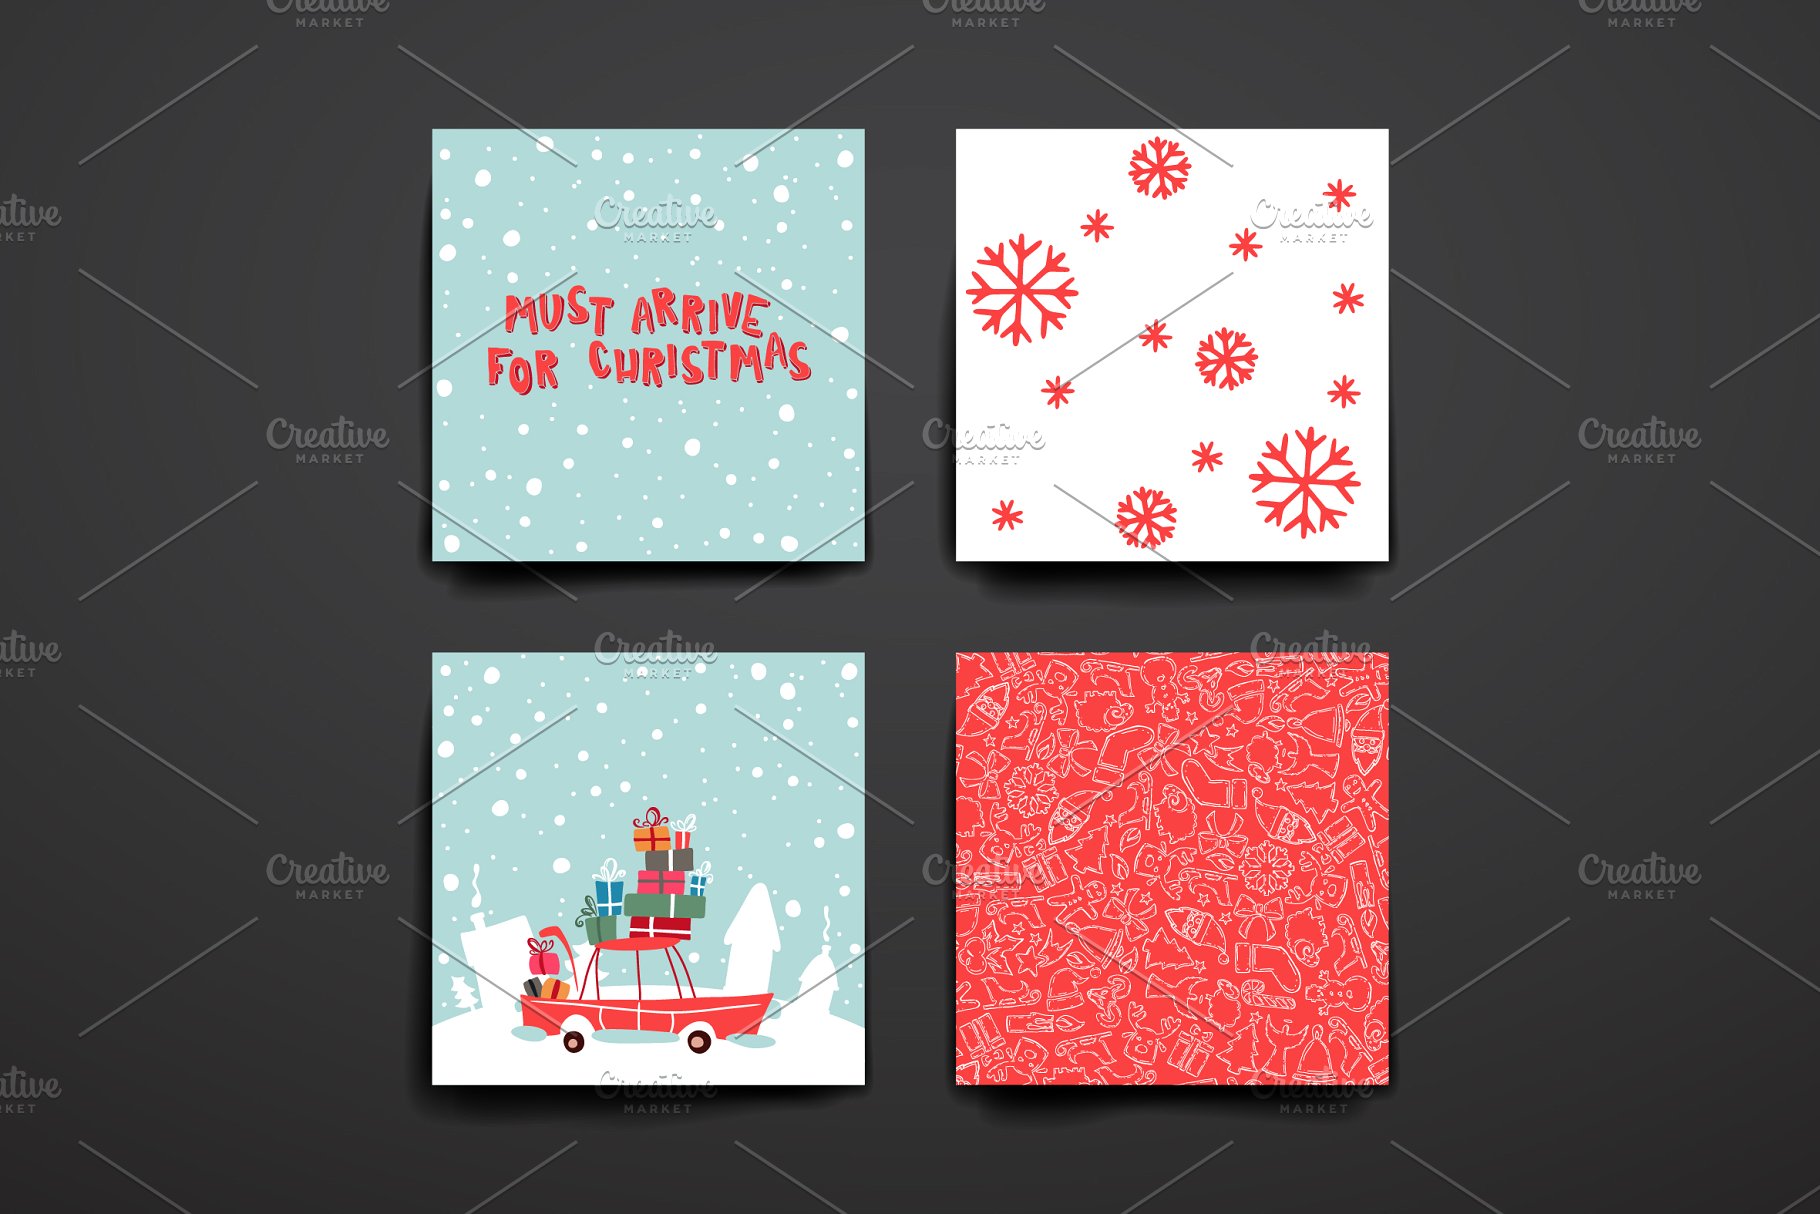 圣诞节日贺卡卡片模板 Merry Christmas Card Templates插图(14)